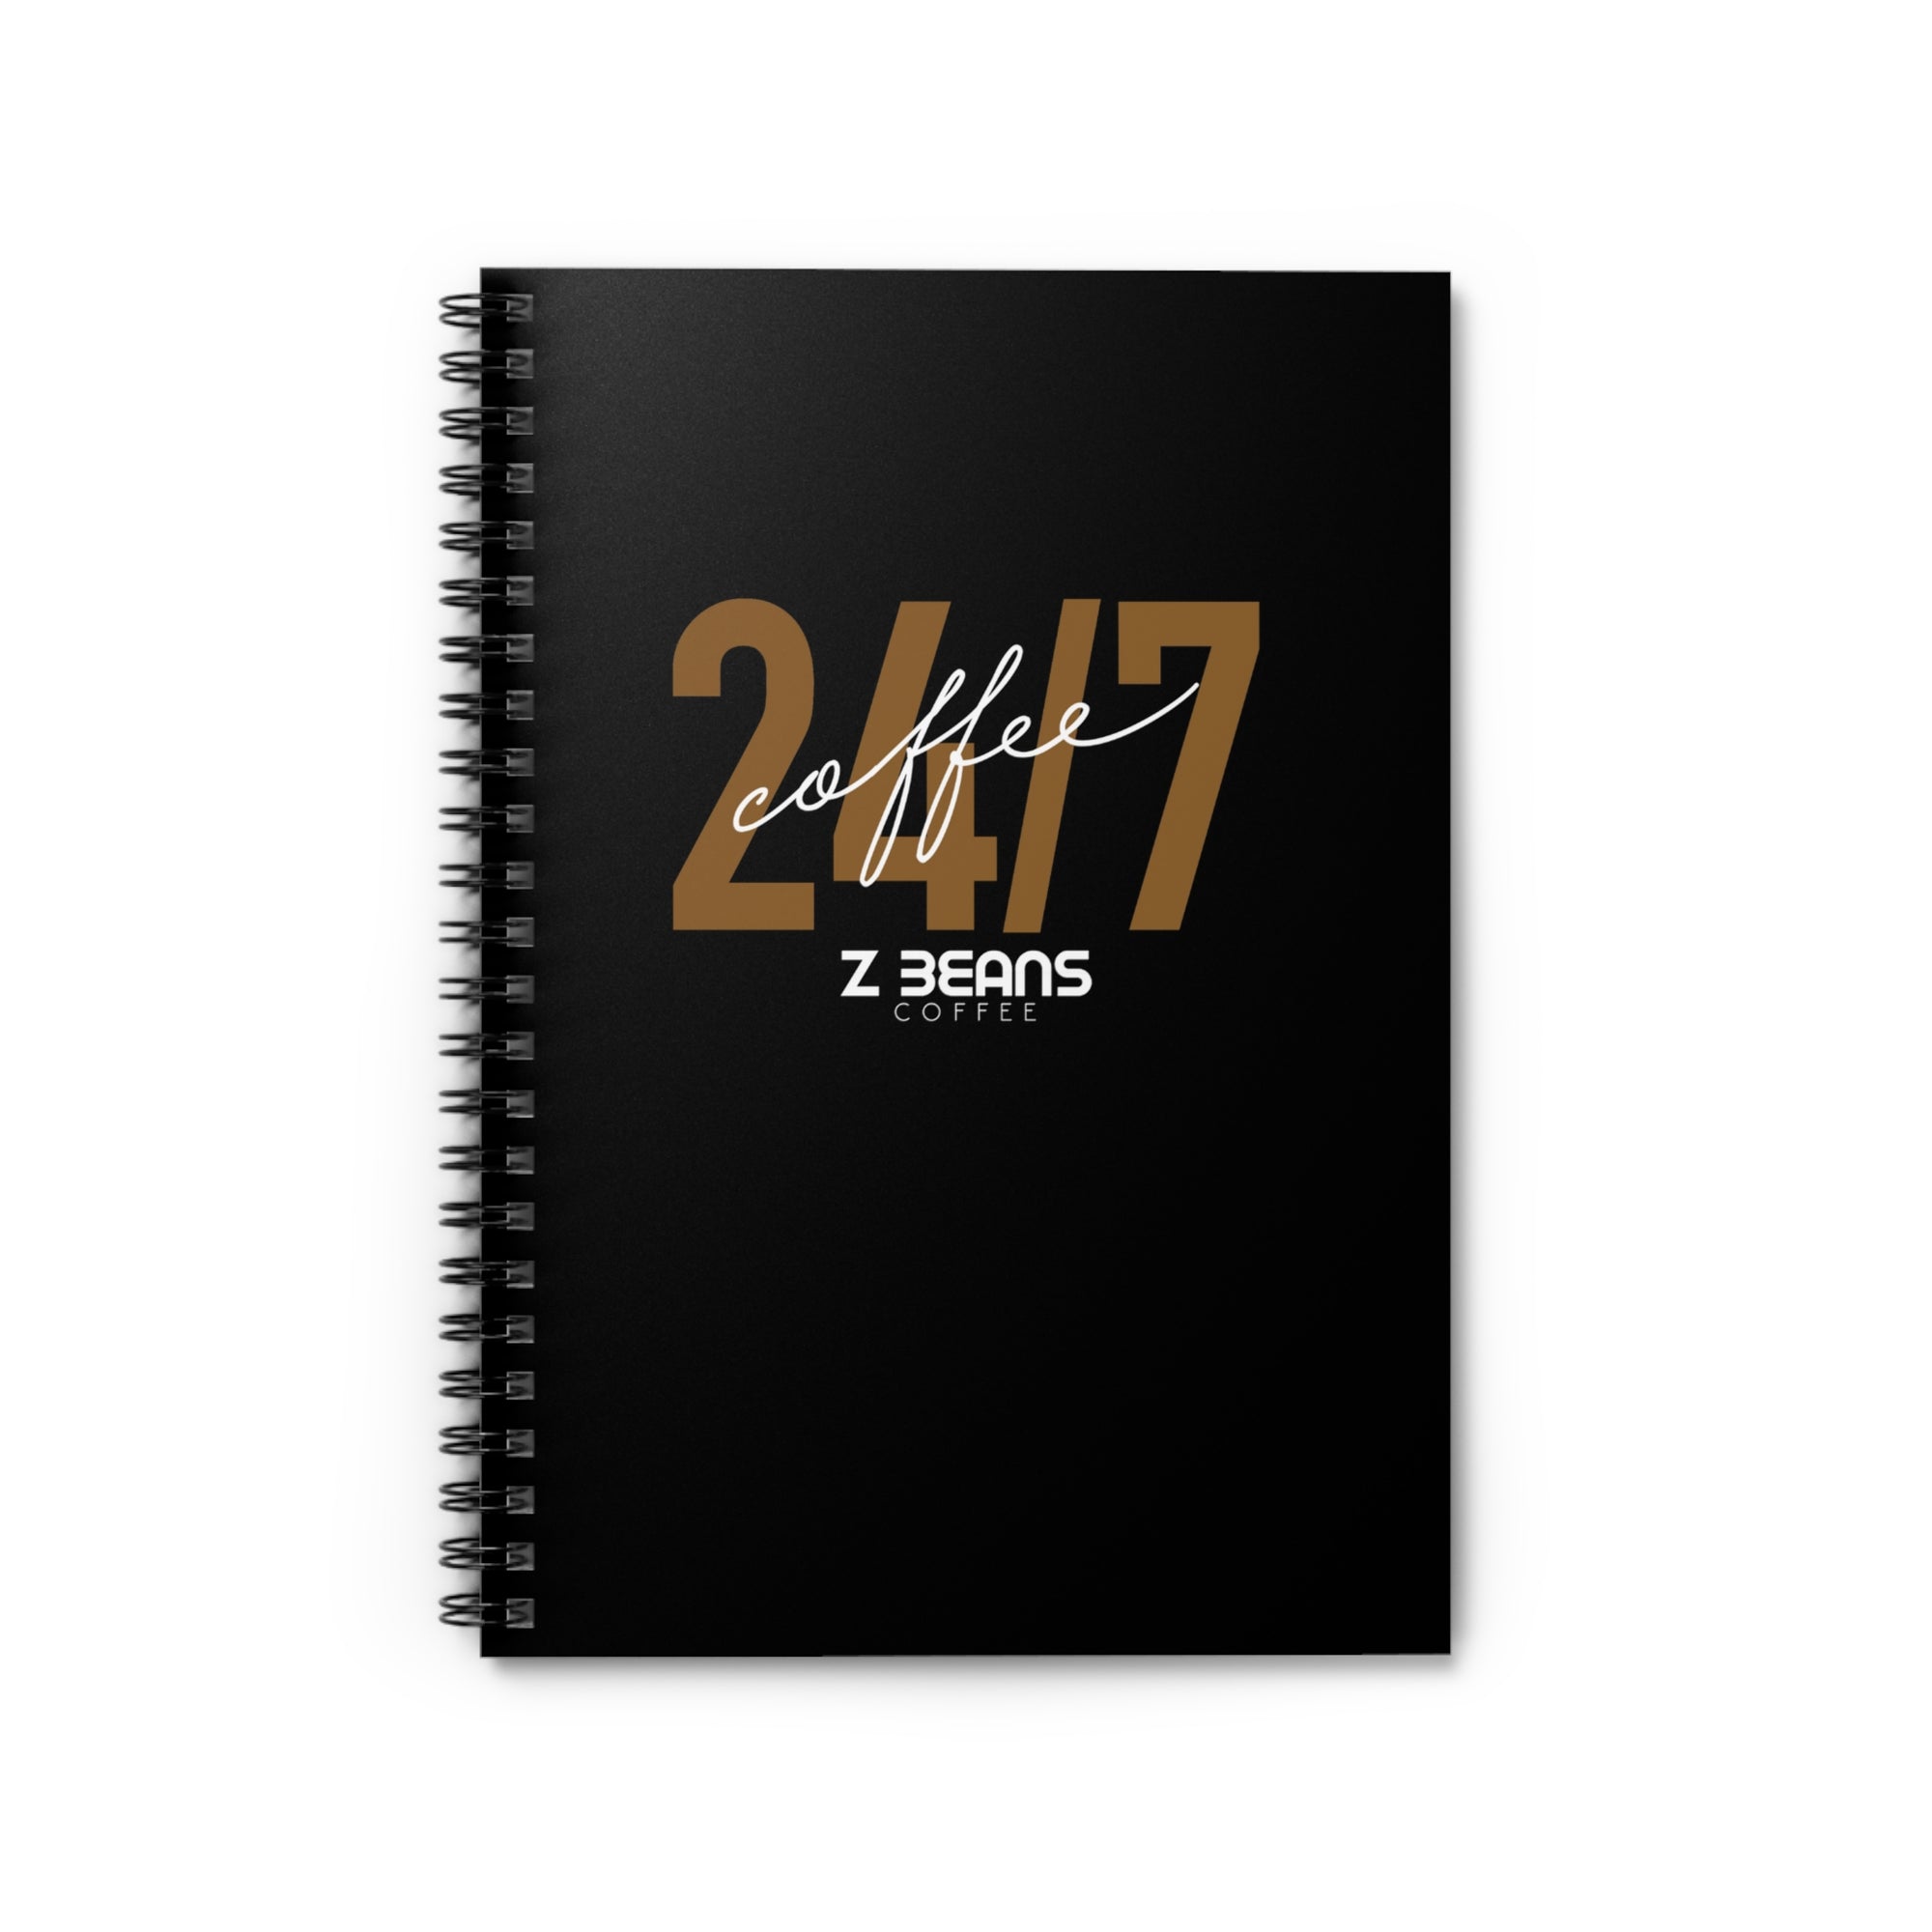 24/7 Coffee Spiral Notebook